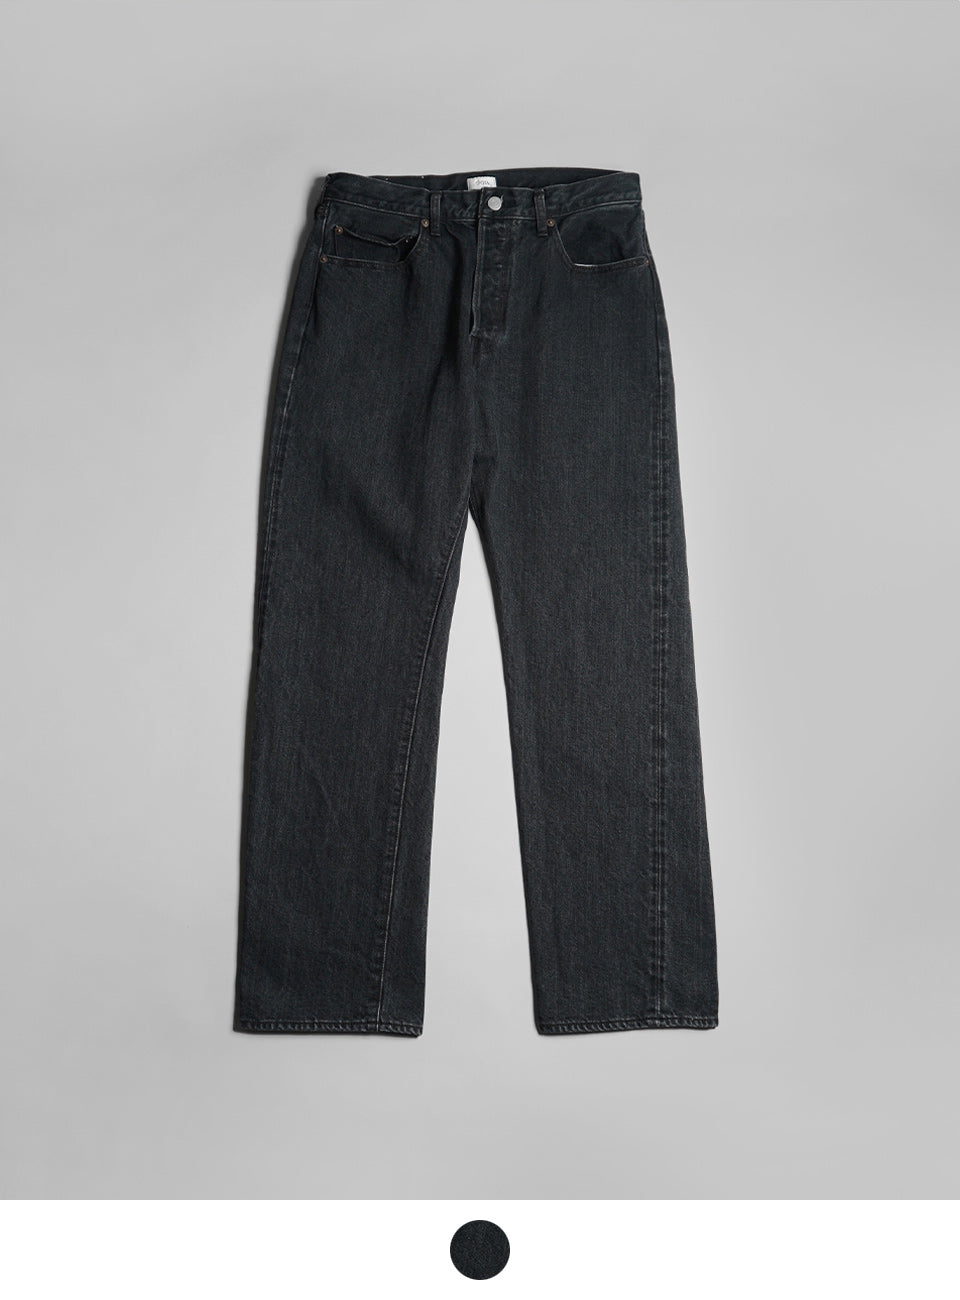 CIOTA シオタ デニム ストレート 5ポケット パンツ New Straight 5 Pocket Pants ミディアムブラック PTLM-21STB 【送料無料】 正規取扱店